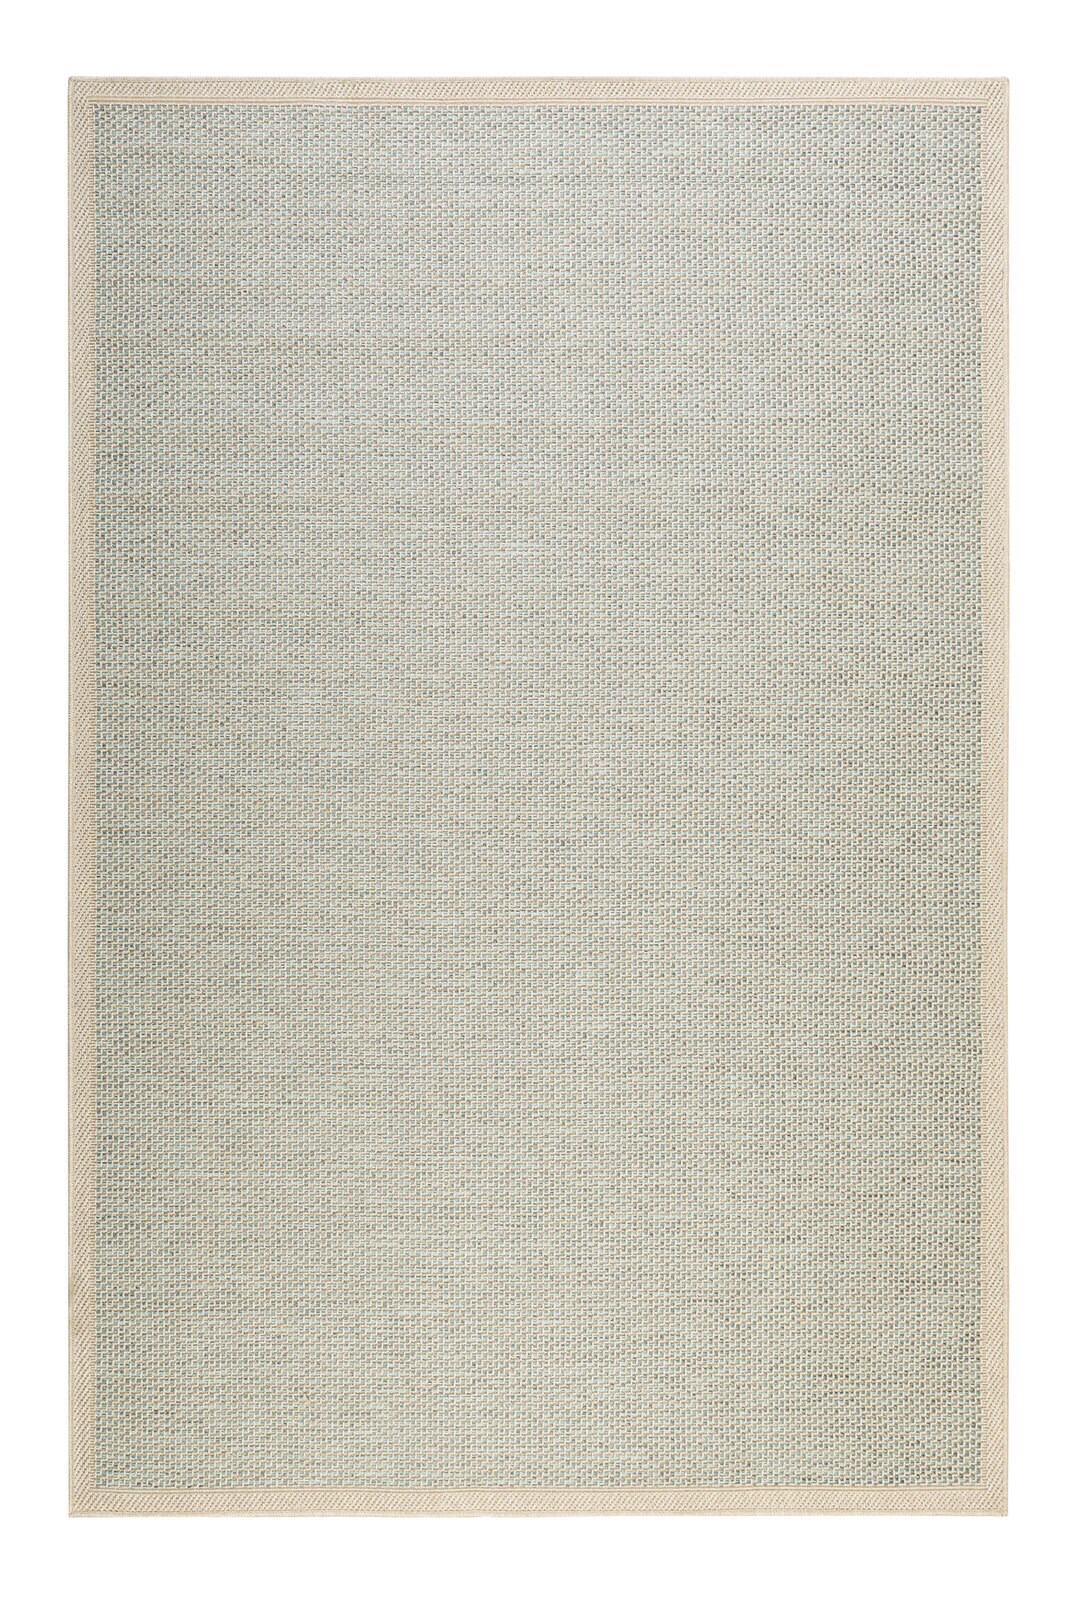 ESPRIT Outdoorteppich MIDLAND 200 x 290 cm beige/türkis